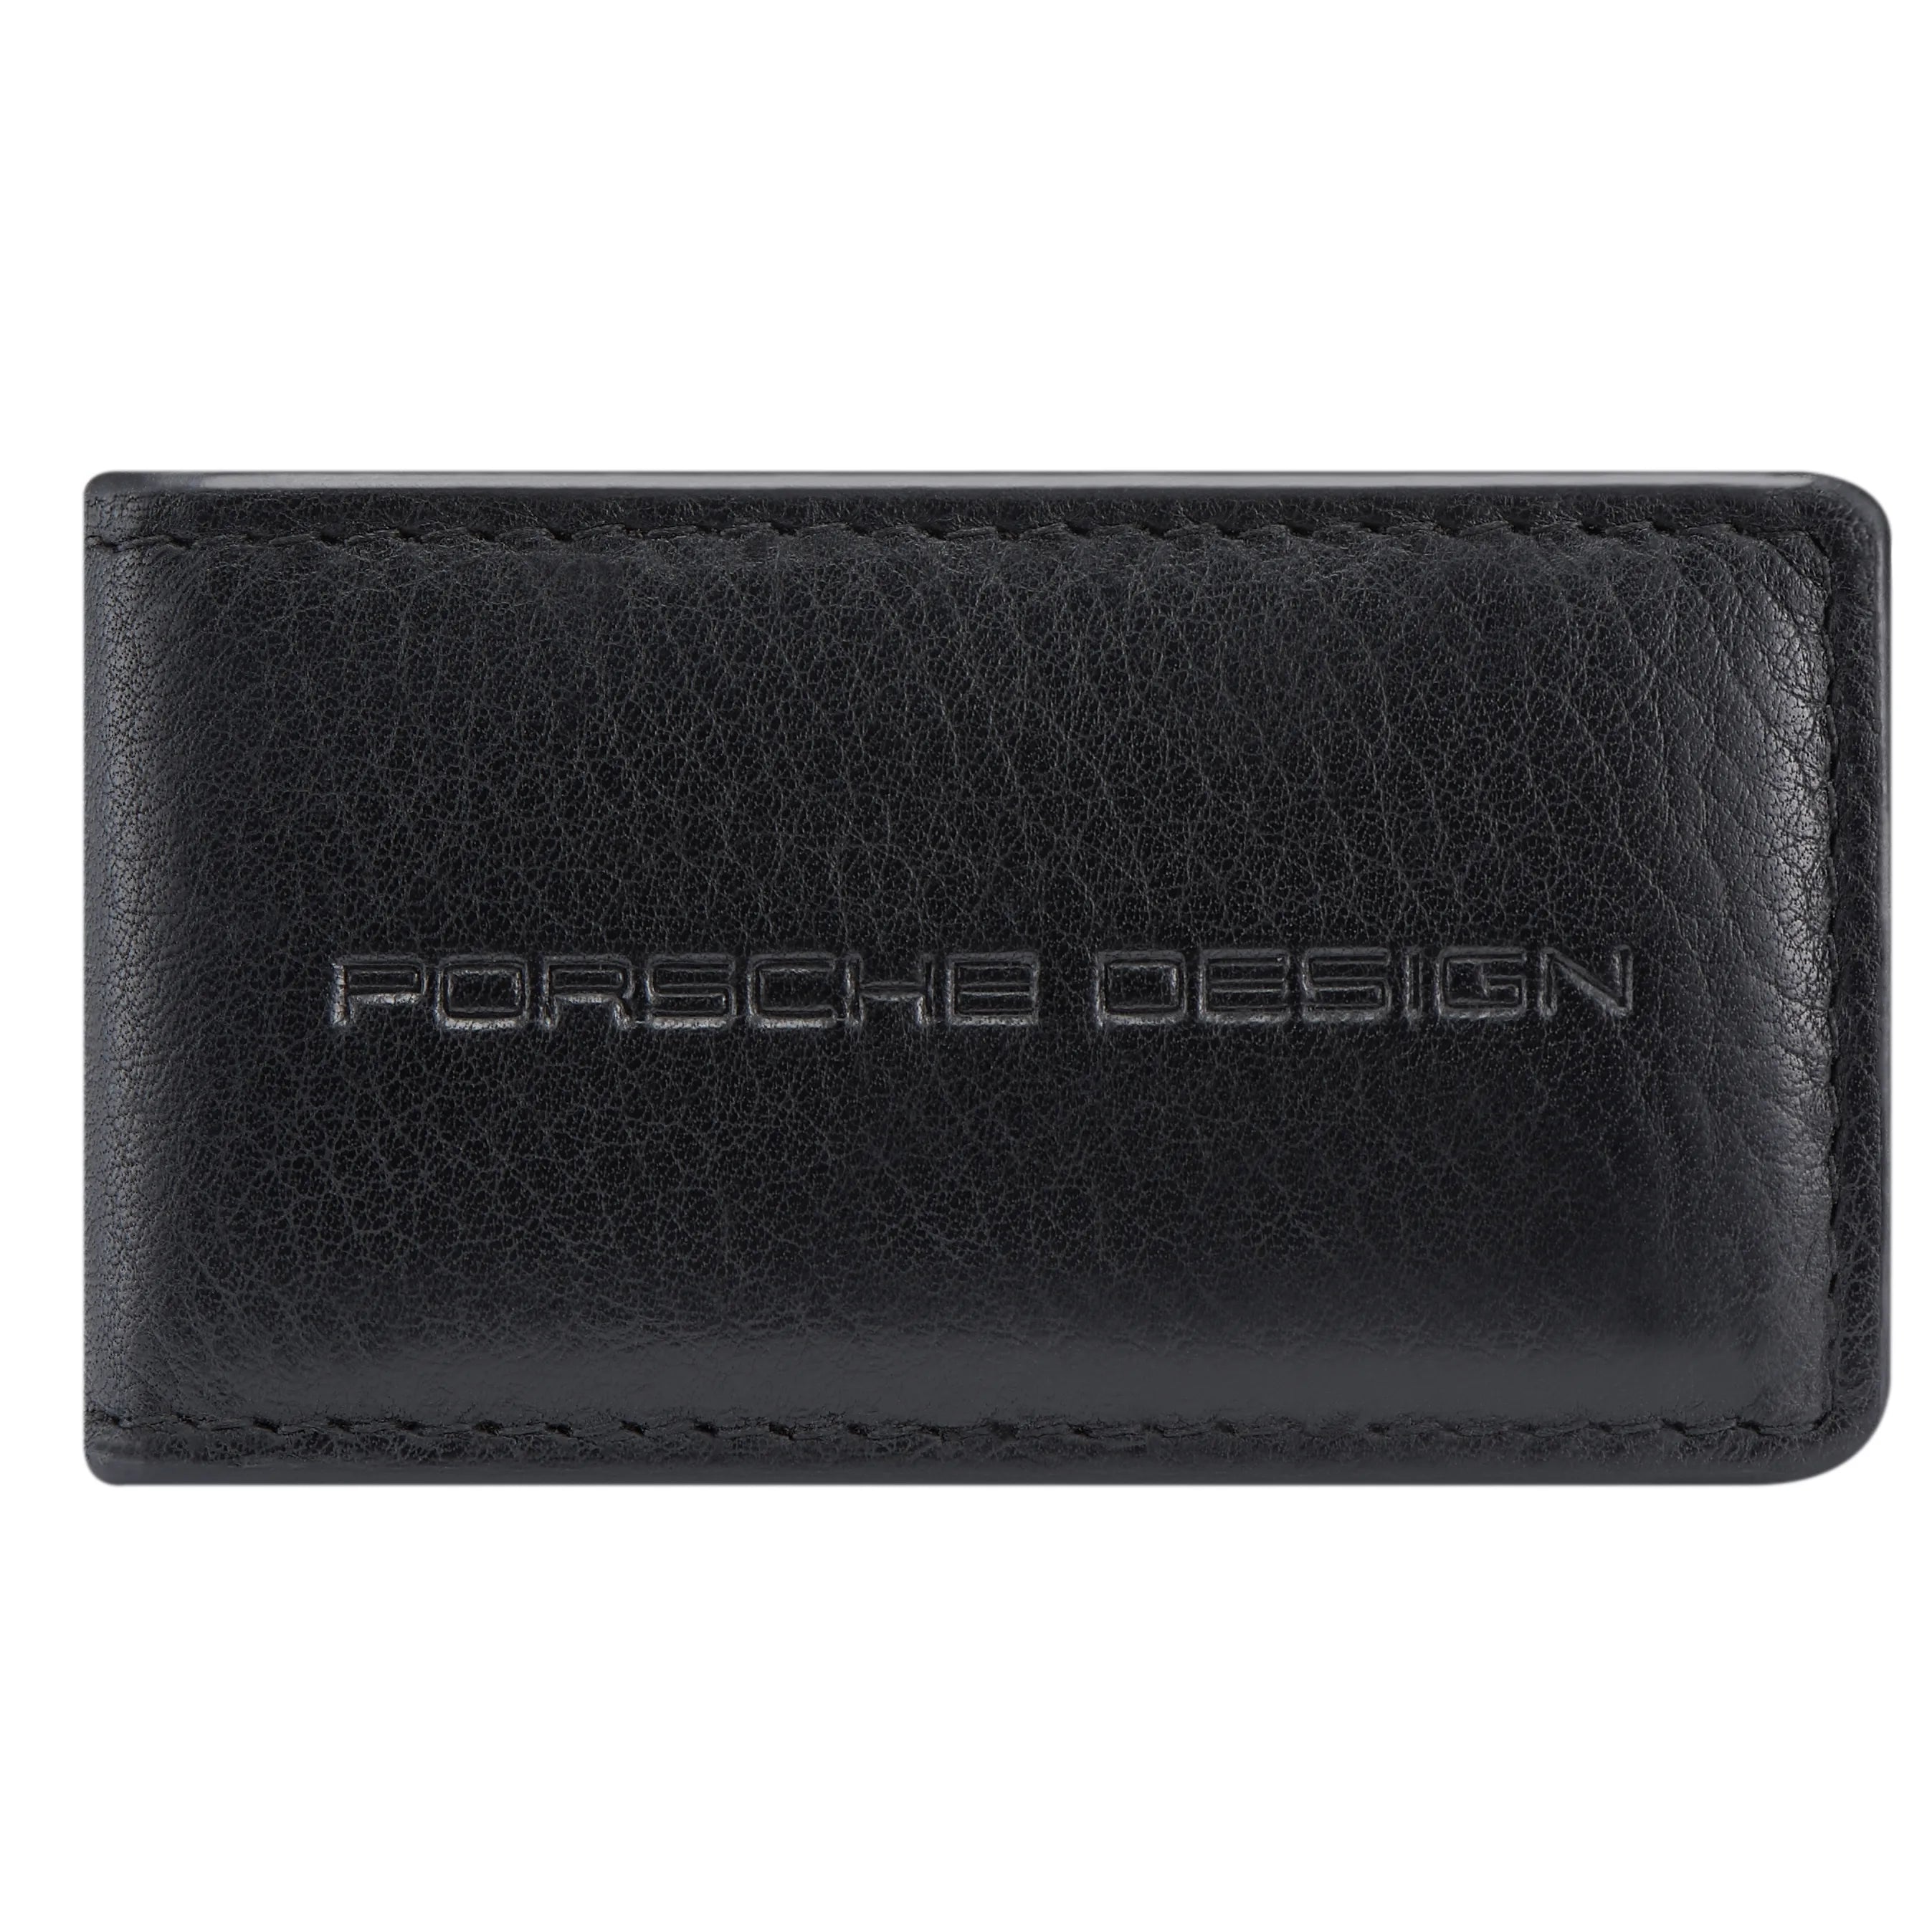 Porsche Design Accessories Business Money Clip 7 cm - Dark Brown